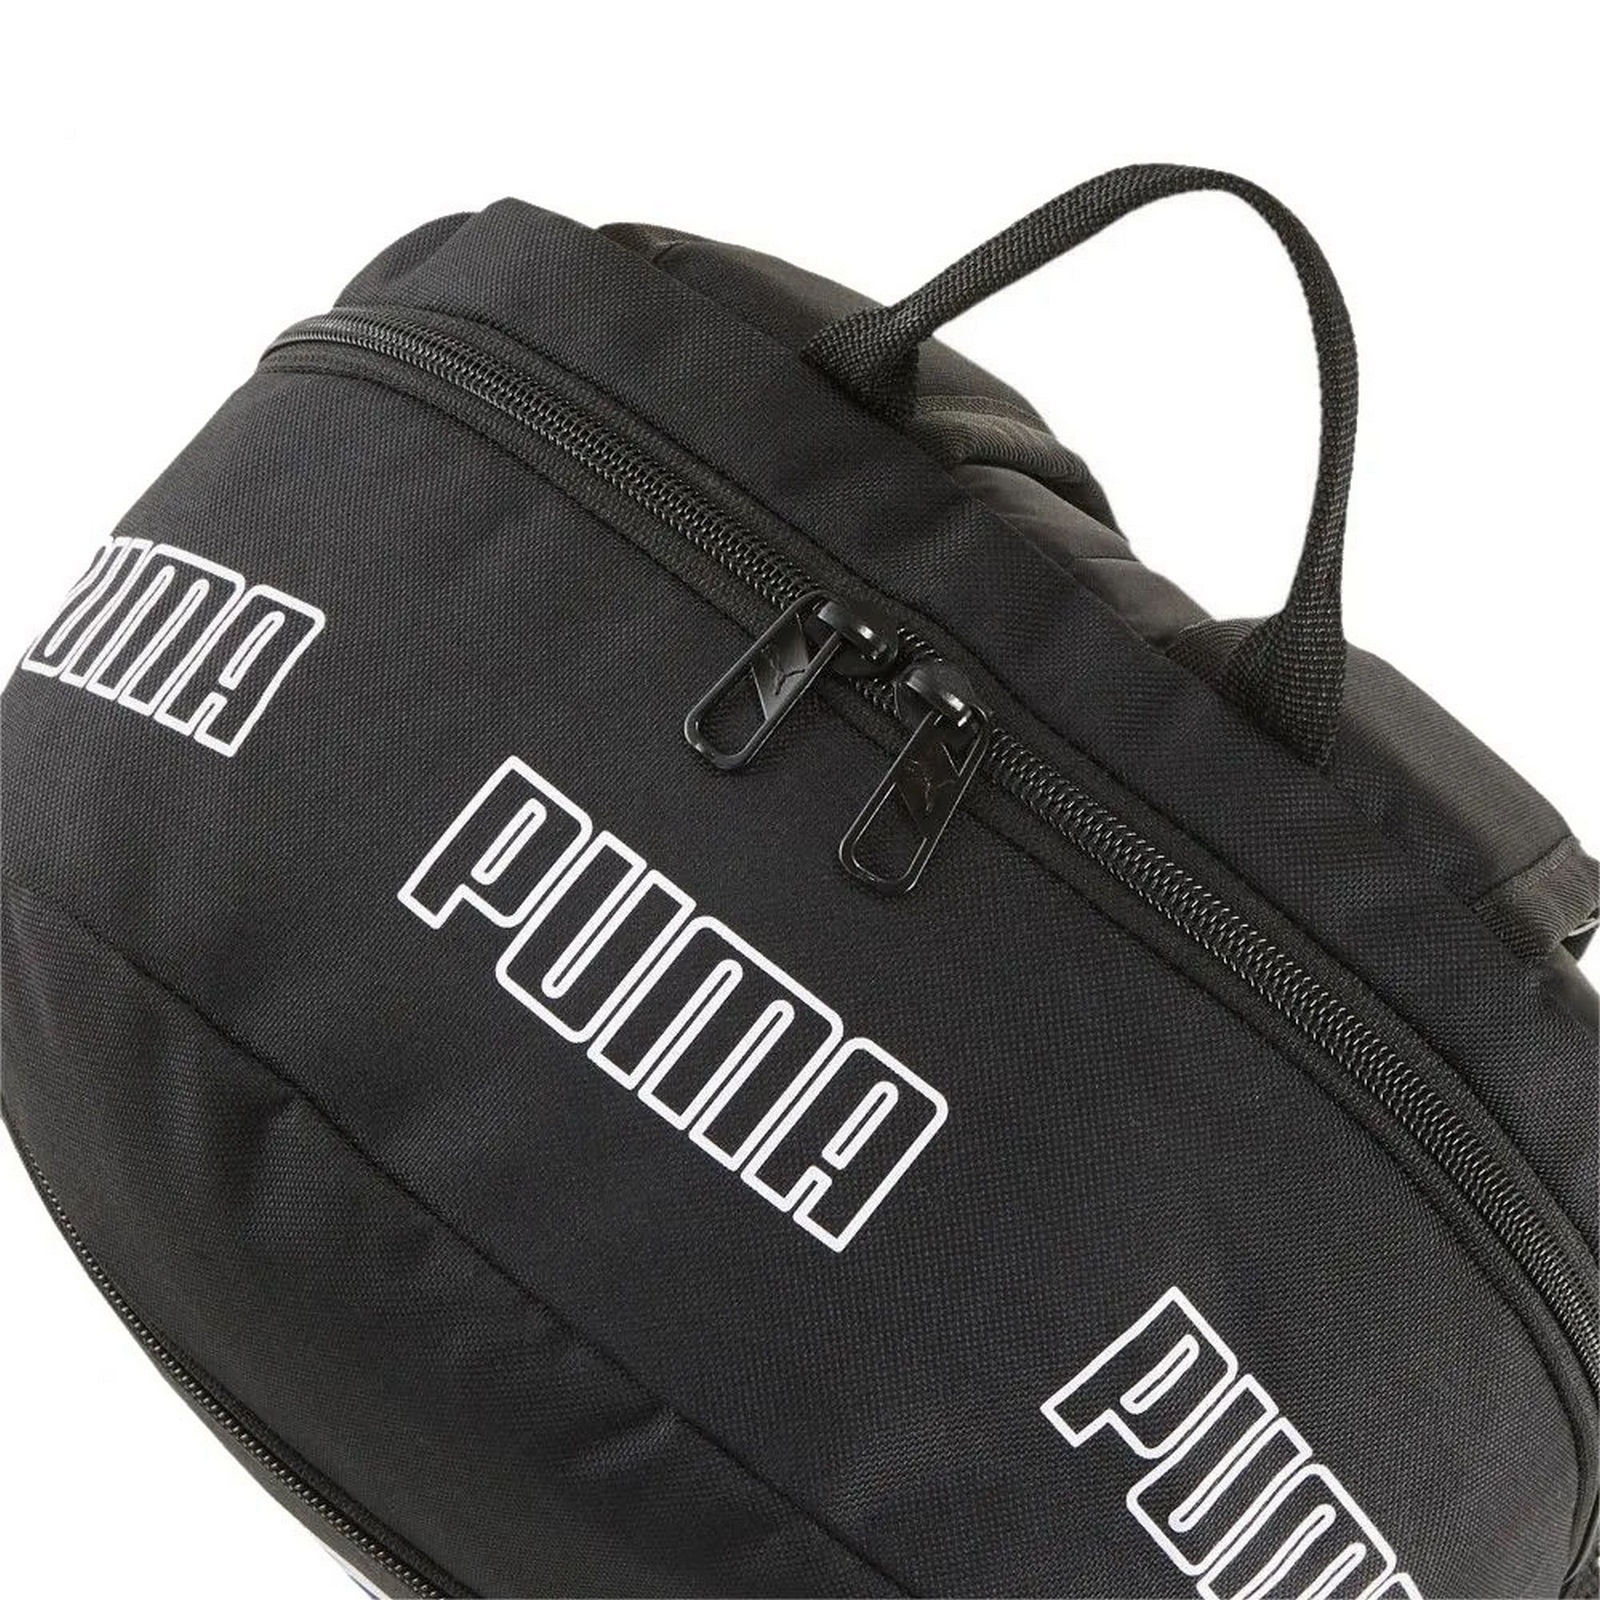 Рюкзак спортивный Phase Backpack II, полиэстер Puma 07995201 черный 1600_1600